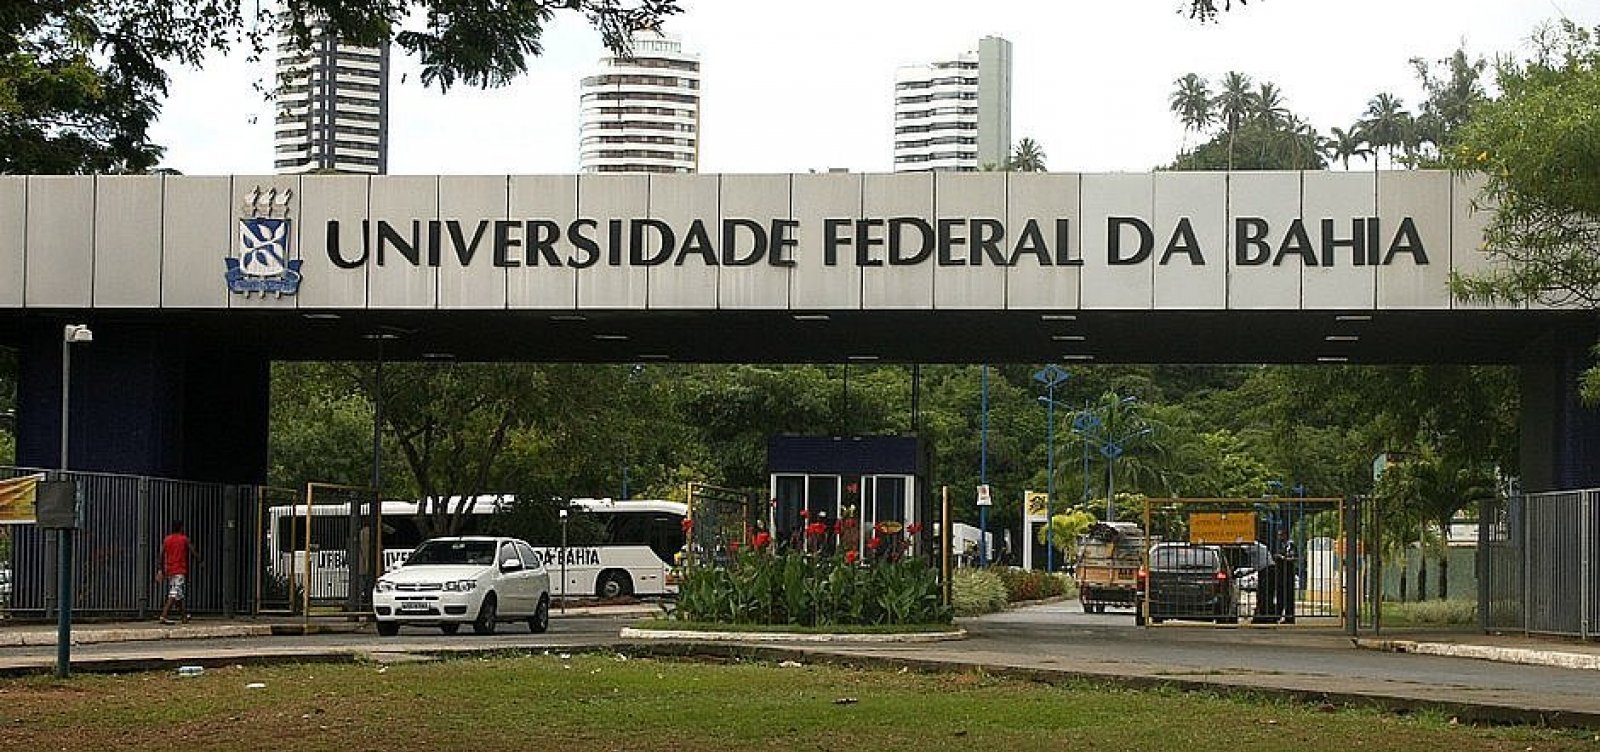 Com recursos bloqueados, universidades federais da Bahia vivem crise e restringem pagamentos de serviços